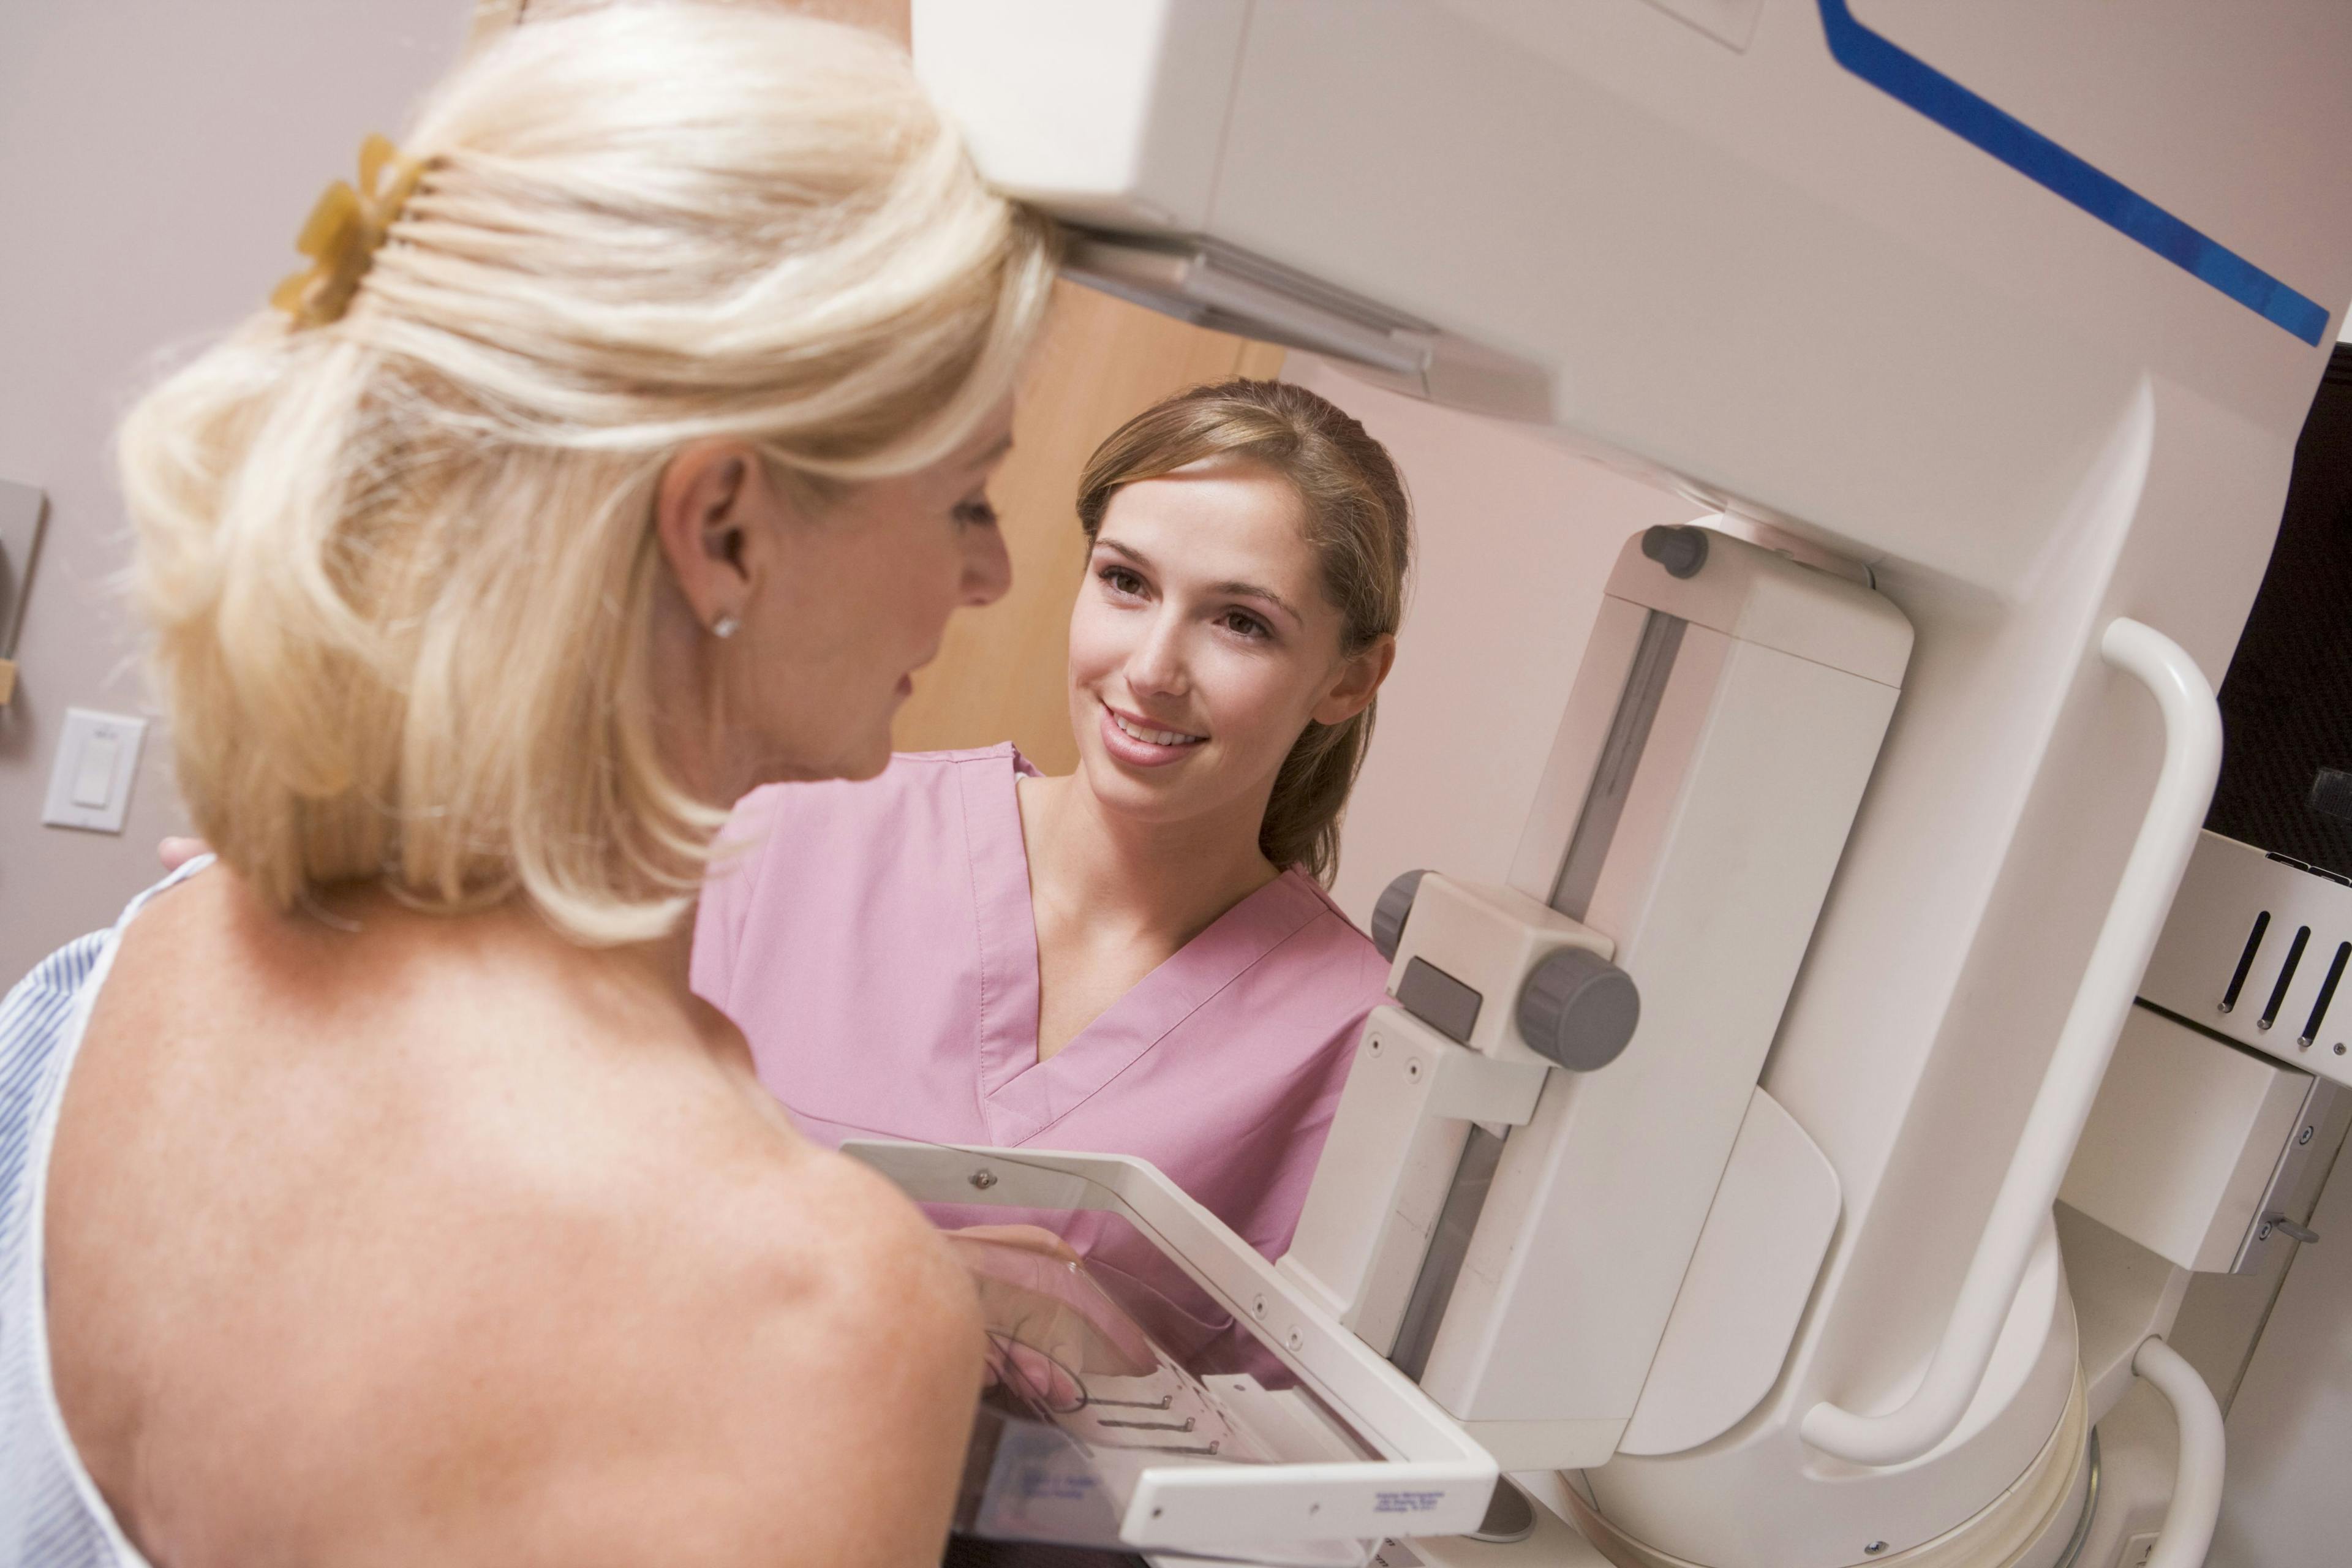 A woman undergoing a mammogram